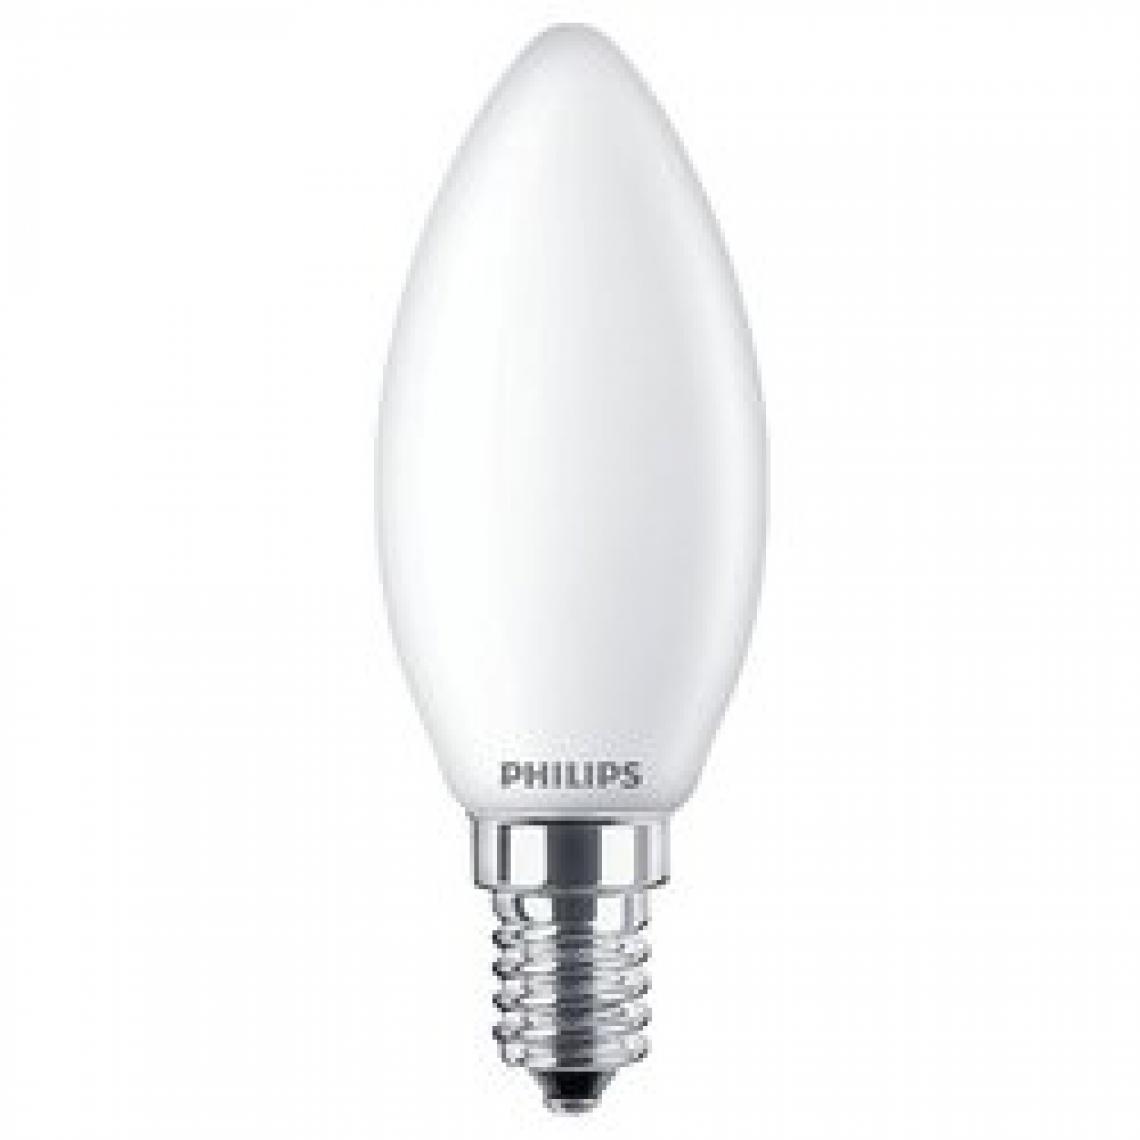 Philips - Ampoule LED E14 forme flamme PHILIPS EQ40W en verre - Ampoules LED